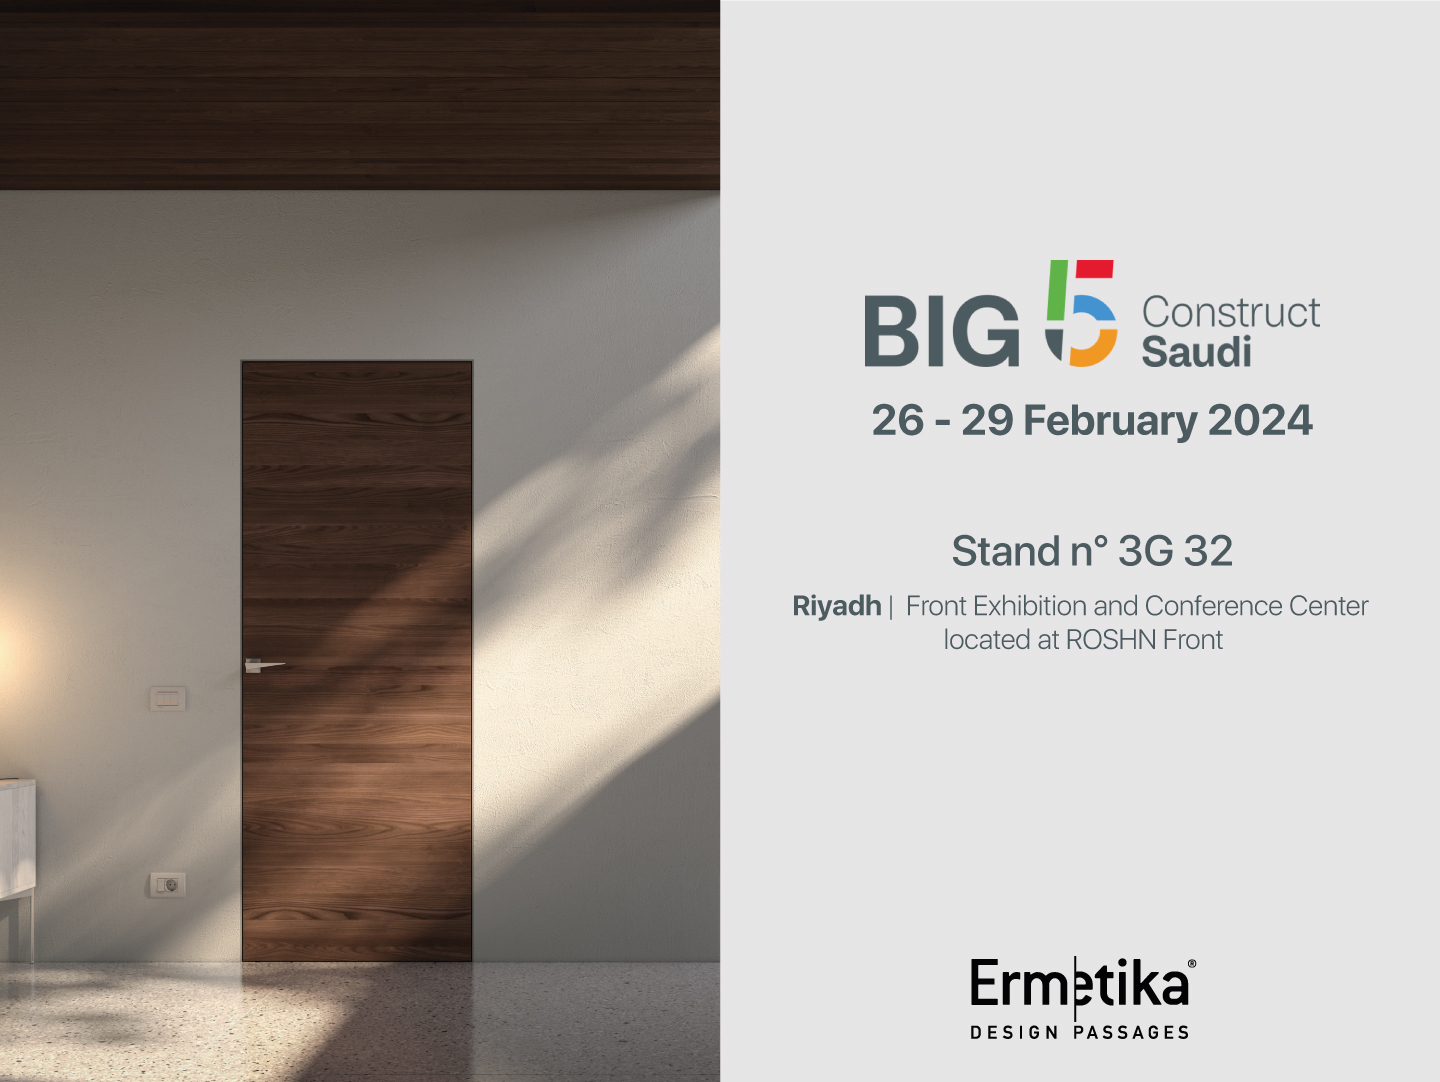 Ermetica alla fiera BIG 5 Saudi: porte di design italiano nel cuore dell’Arabia Saudita